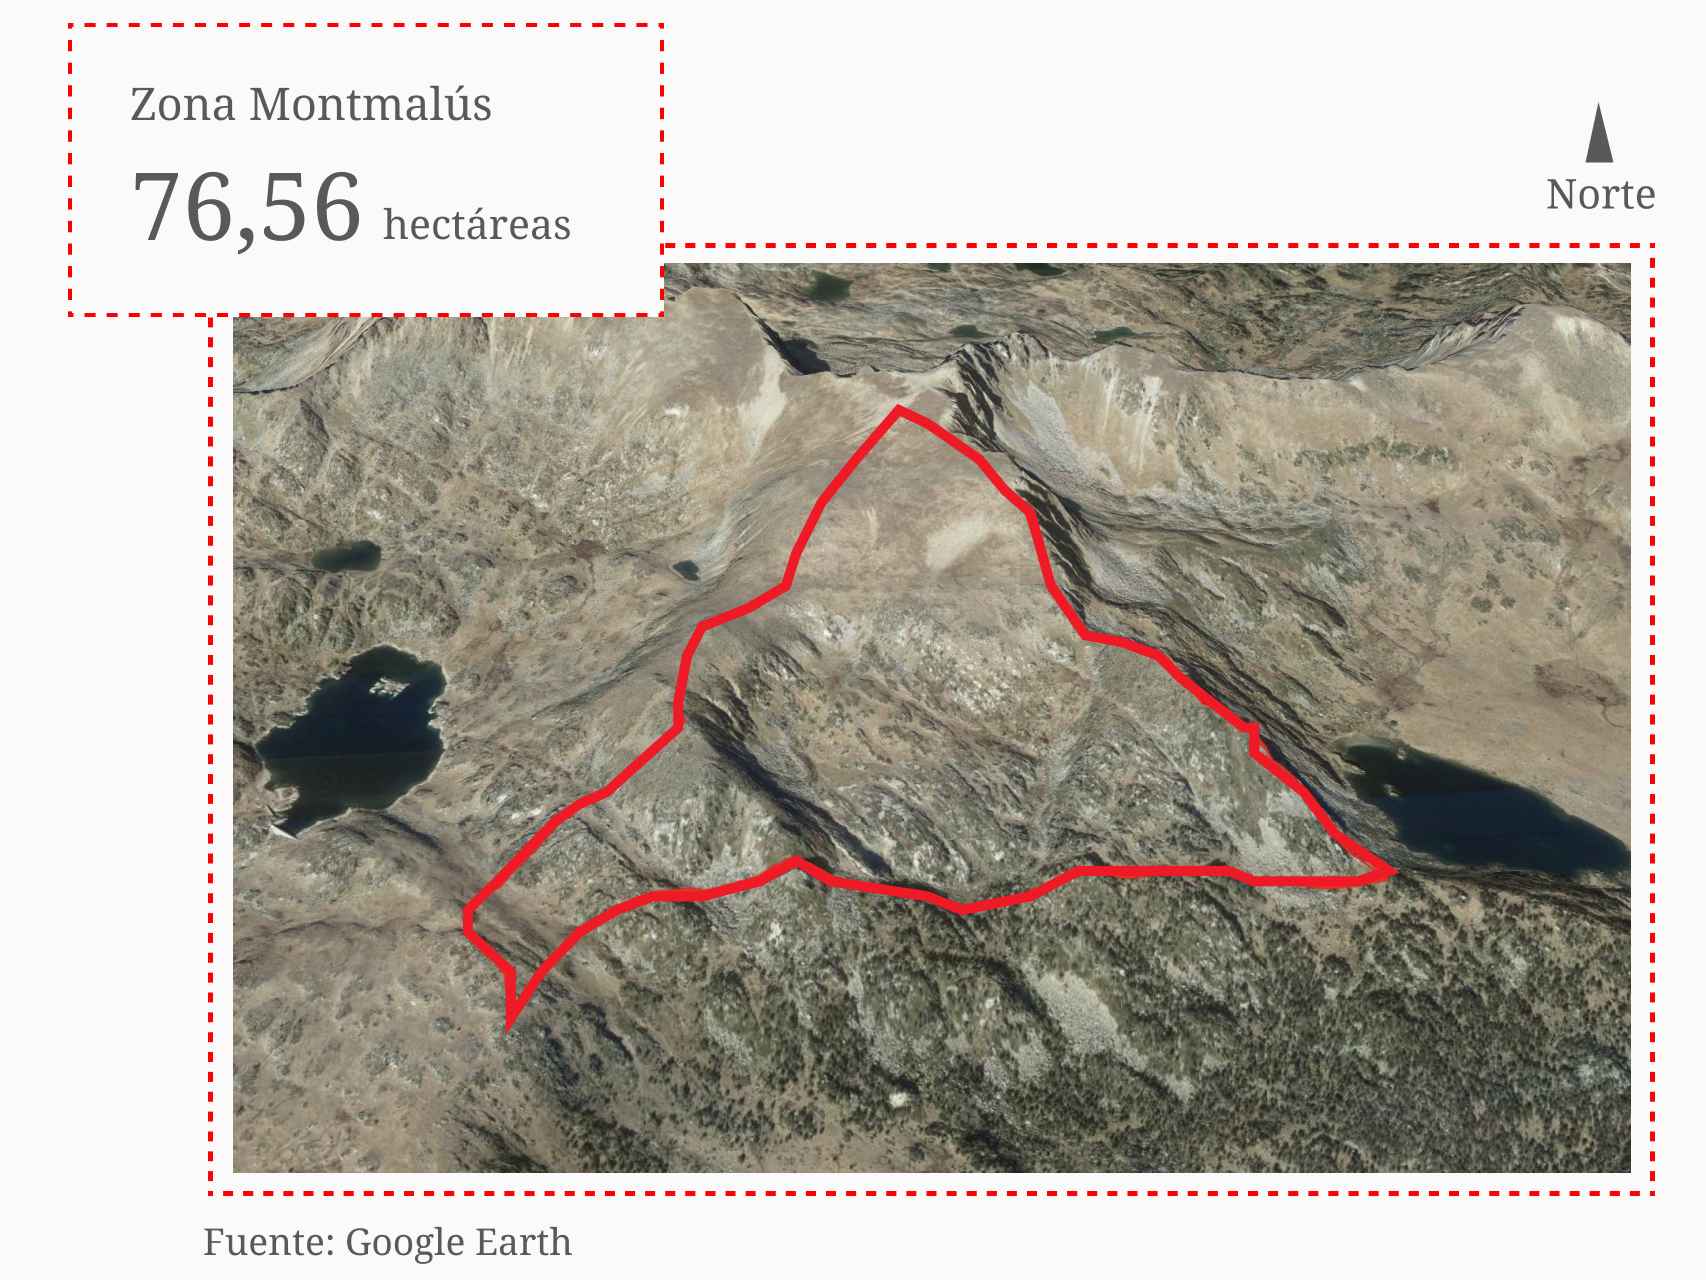 La tercera superficie en disputa ocupa una área de 76,56 hectáreas en la vertiente sur del pico de Montmalús.